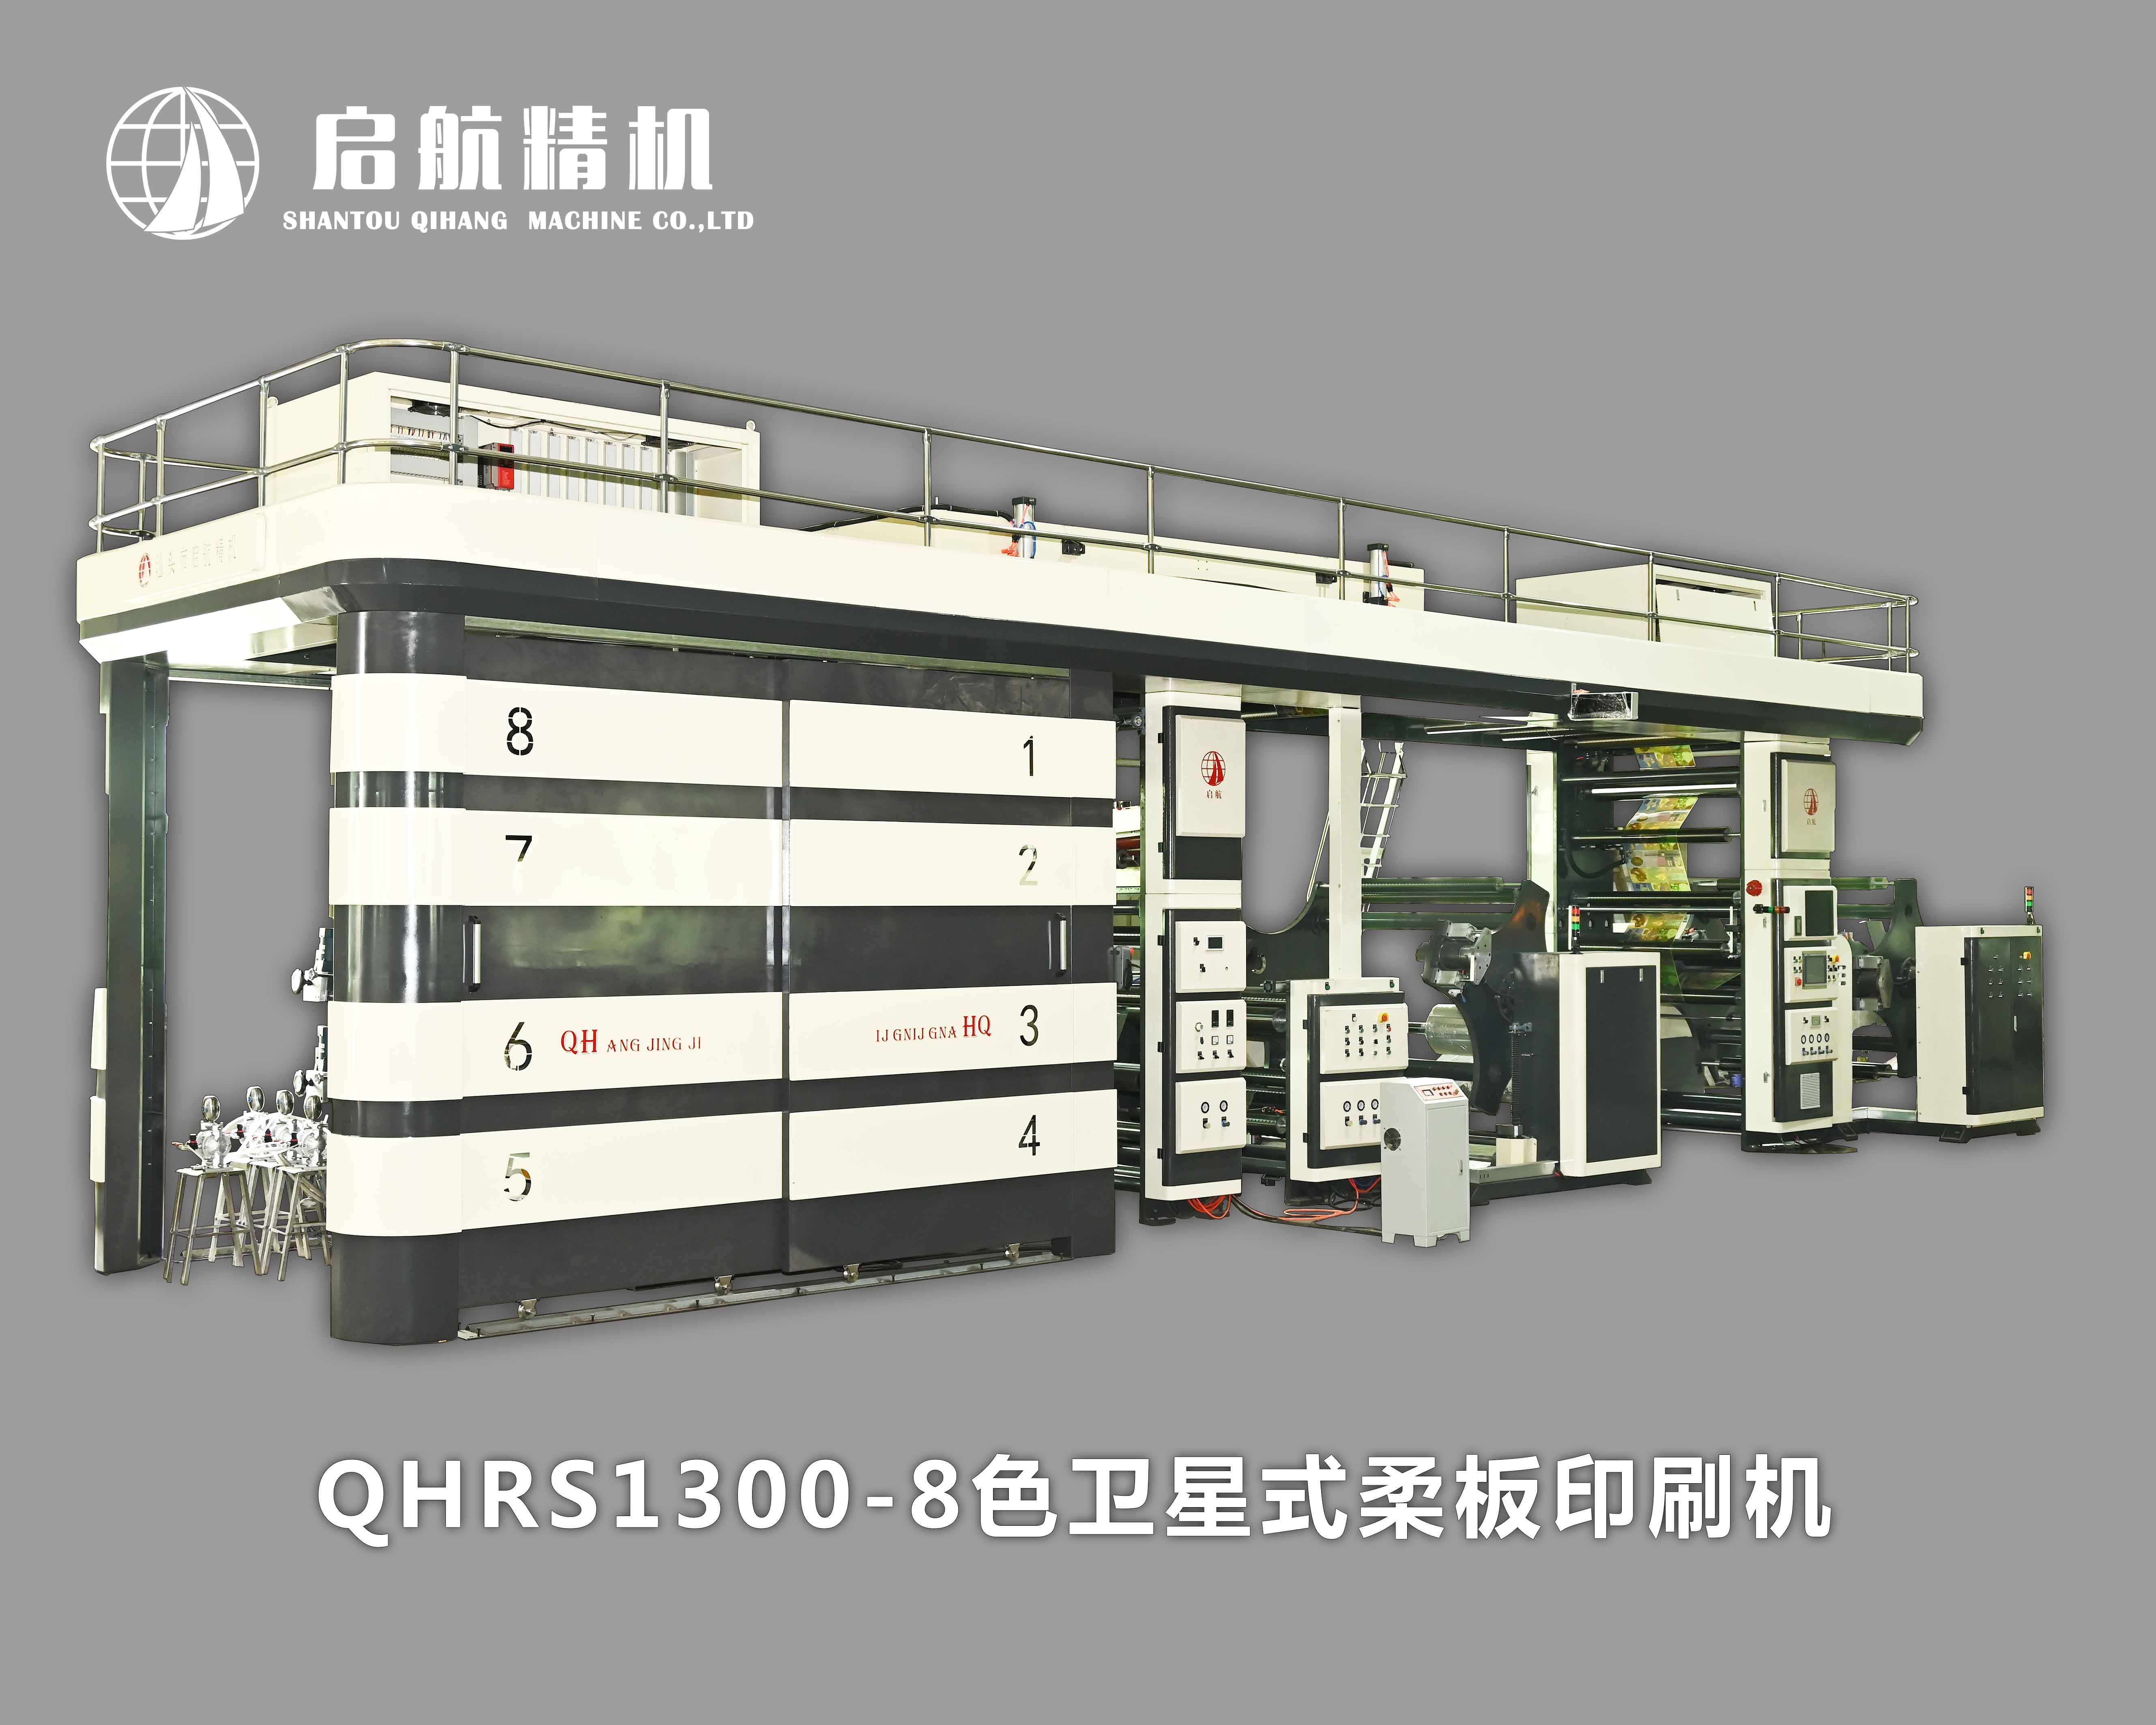 QHRS1300-8色卫星式柔板印刷机